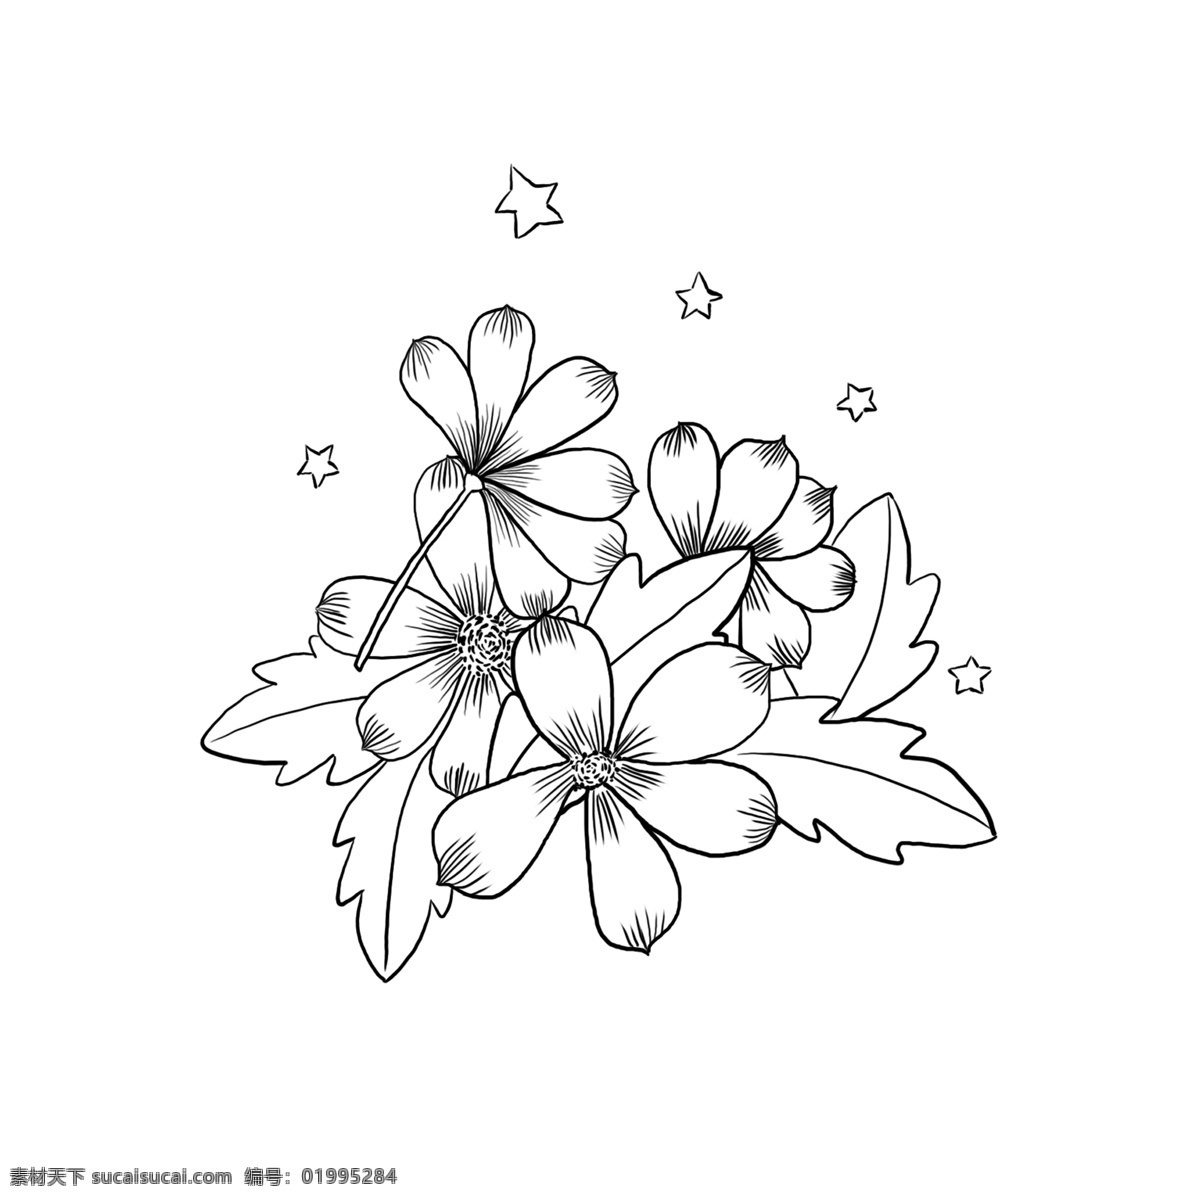 黑白 分层 花朵 底纹 线 稿 商用 花朵线稿 黑白线稿 花卉线稿 花卉纹理 手绘花朵线稿